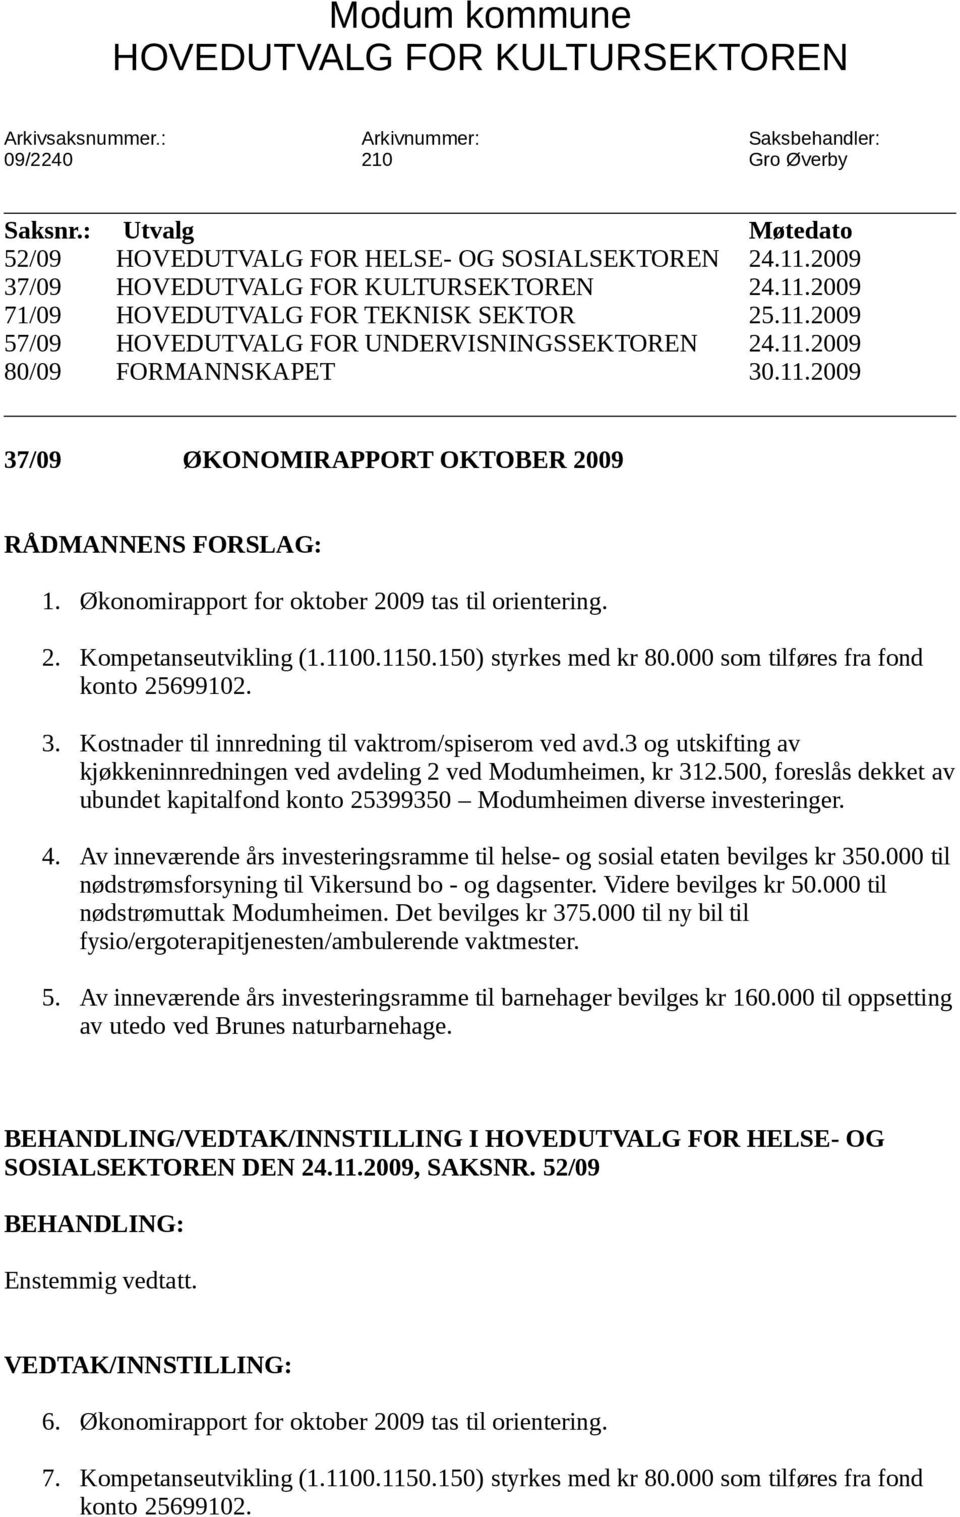 Økonomirapport for oktober 2009 tas til orientering. 2. Kompetanseutvikling (1.1100.1150.150) styrkes med kr 80.000 som tilføres fra fond konto 25699102. 3.